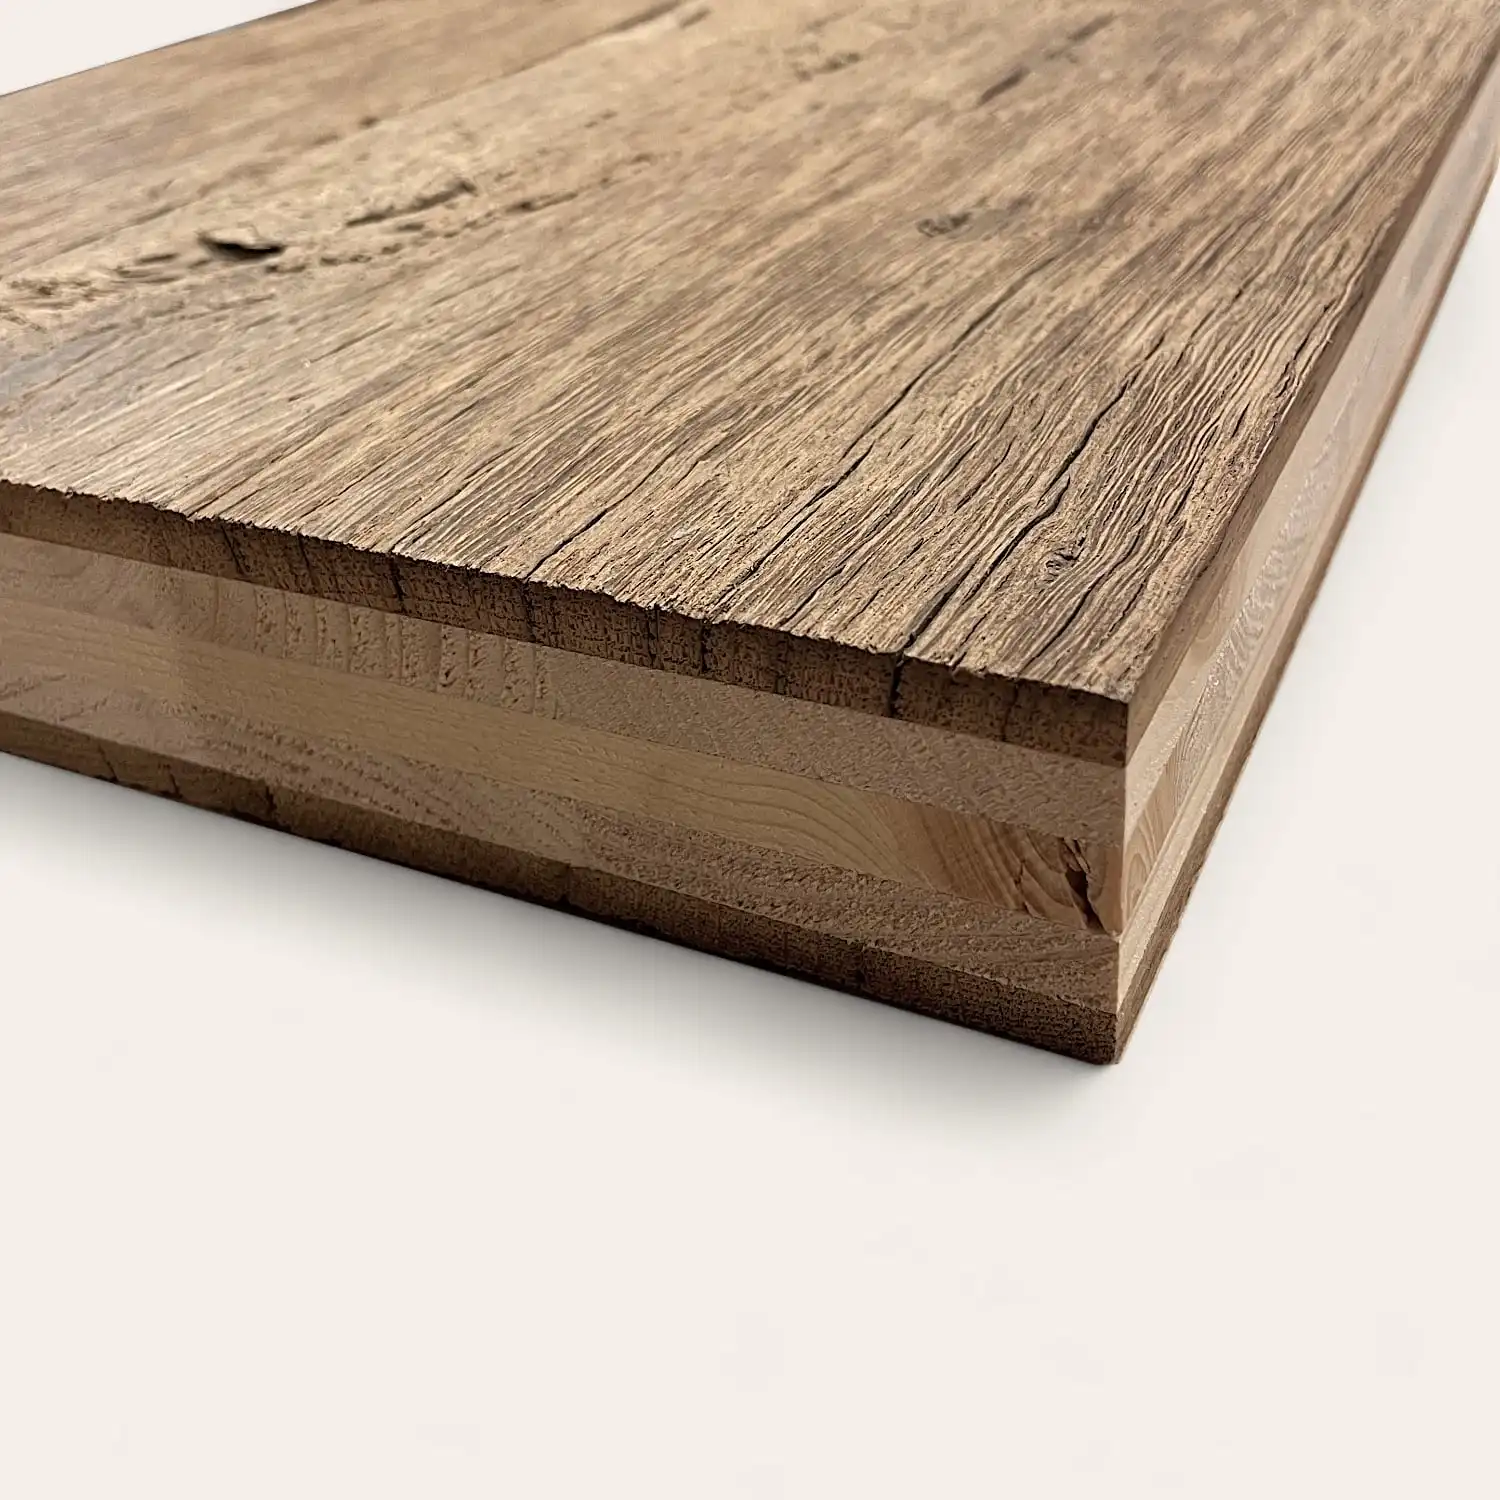  Gros plan d'une planche de bois texturée montrant le grain et les bords détaillés du bois, placée sur une surface blanche. Ceci est un exemple de panneaux vieux bois. 